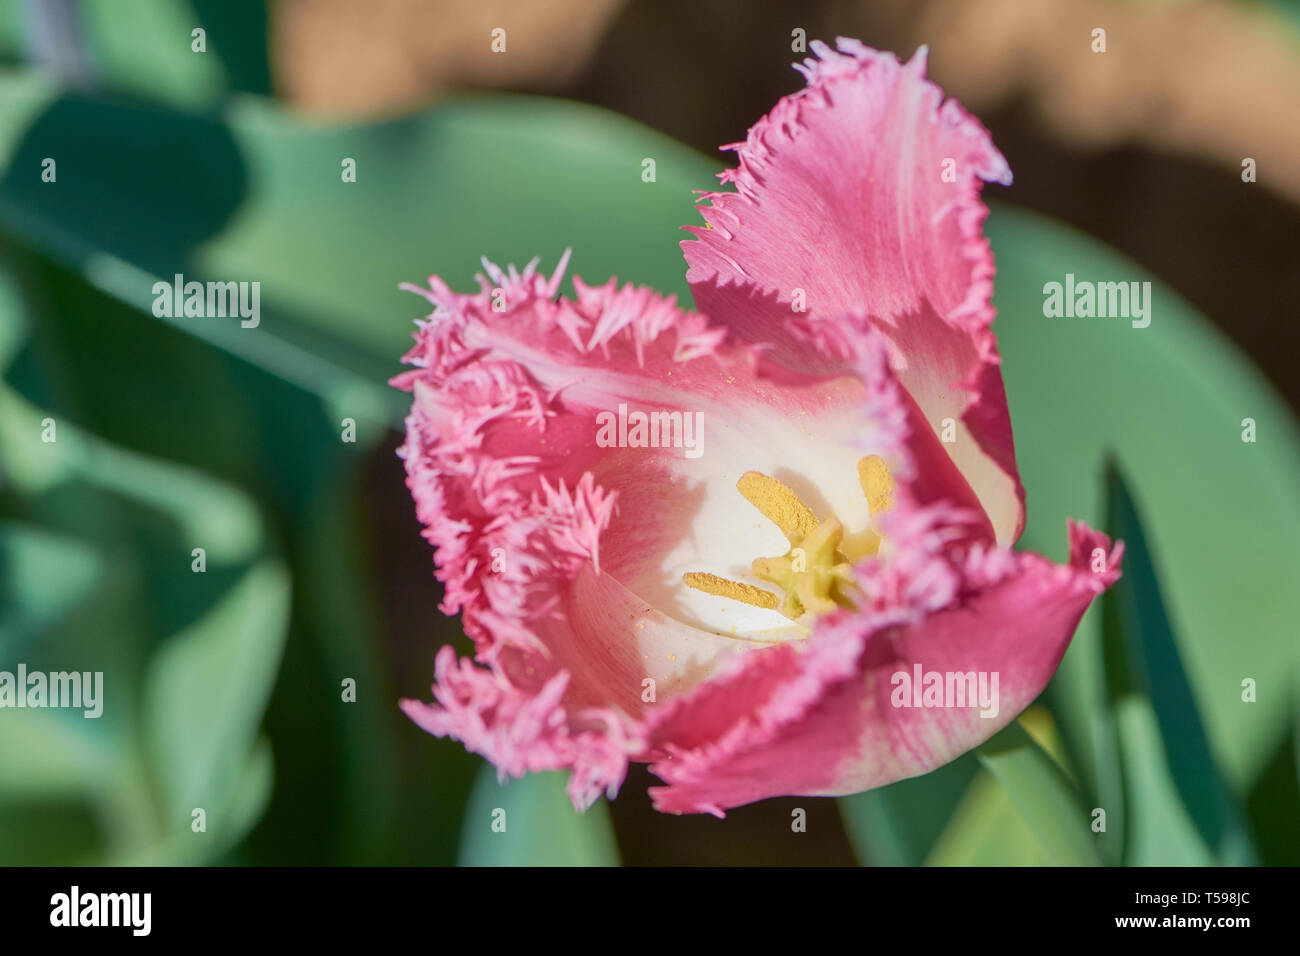 Couleur macro photo de tulip plaqués de fioritures sur une journée ensoleillée Banque D'Images